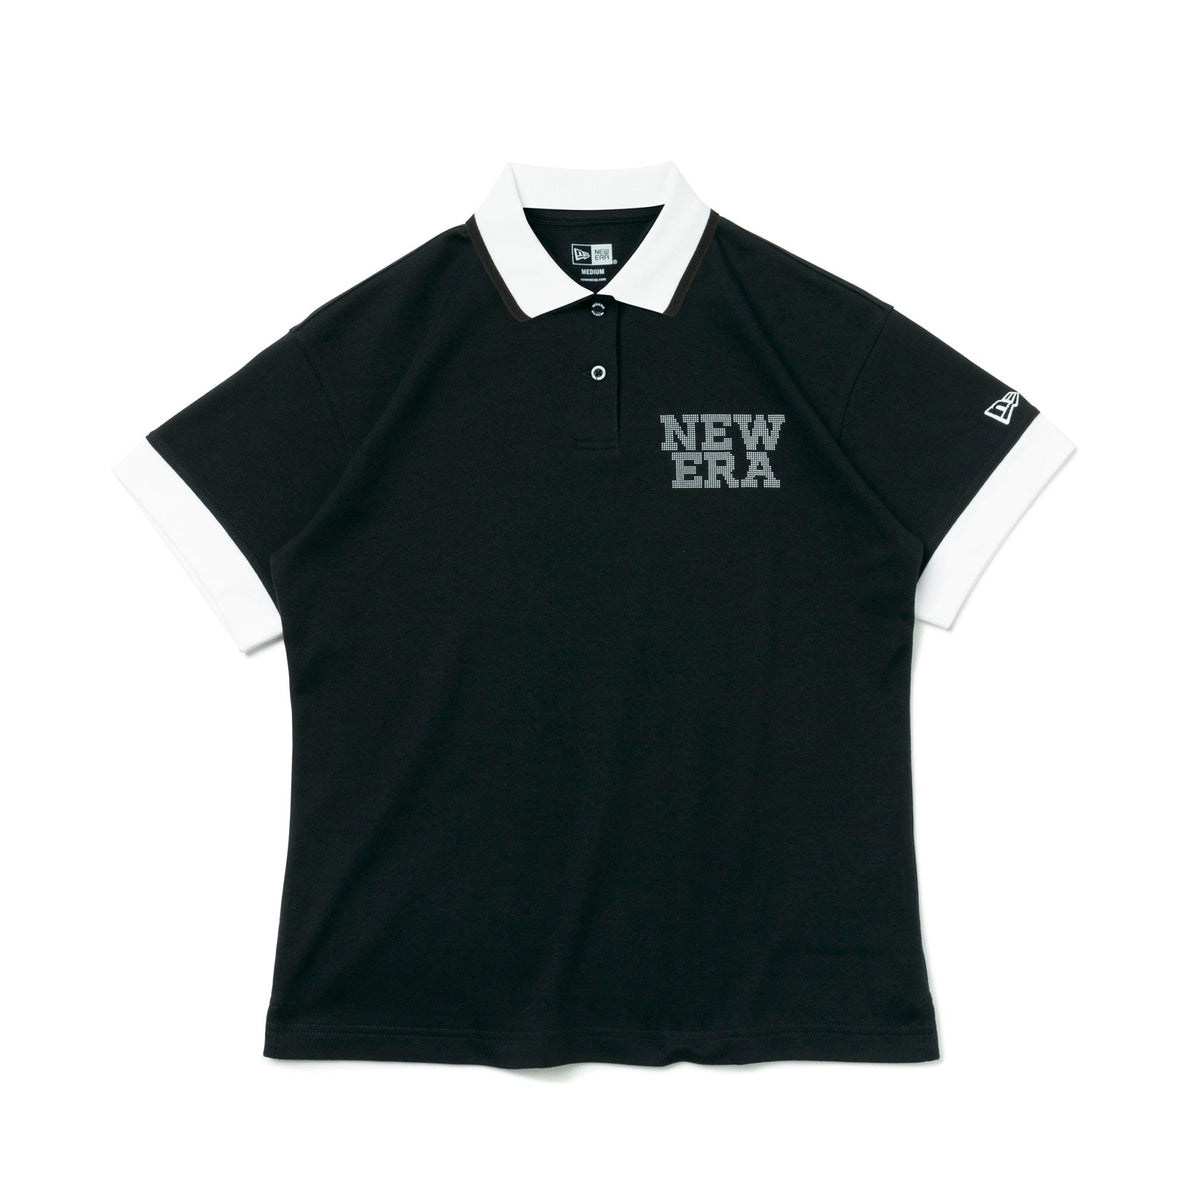 【ゴルフ】 WOMEN'S 半袖 ポロシャツ Dot NEW ERA ブラック